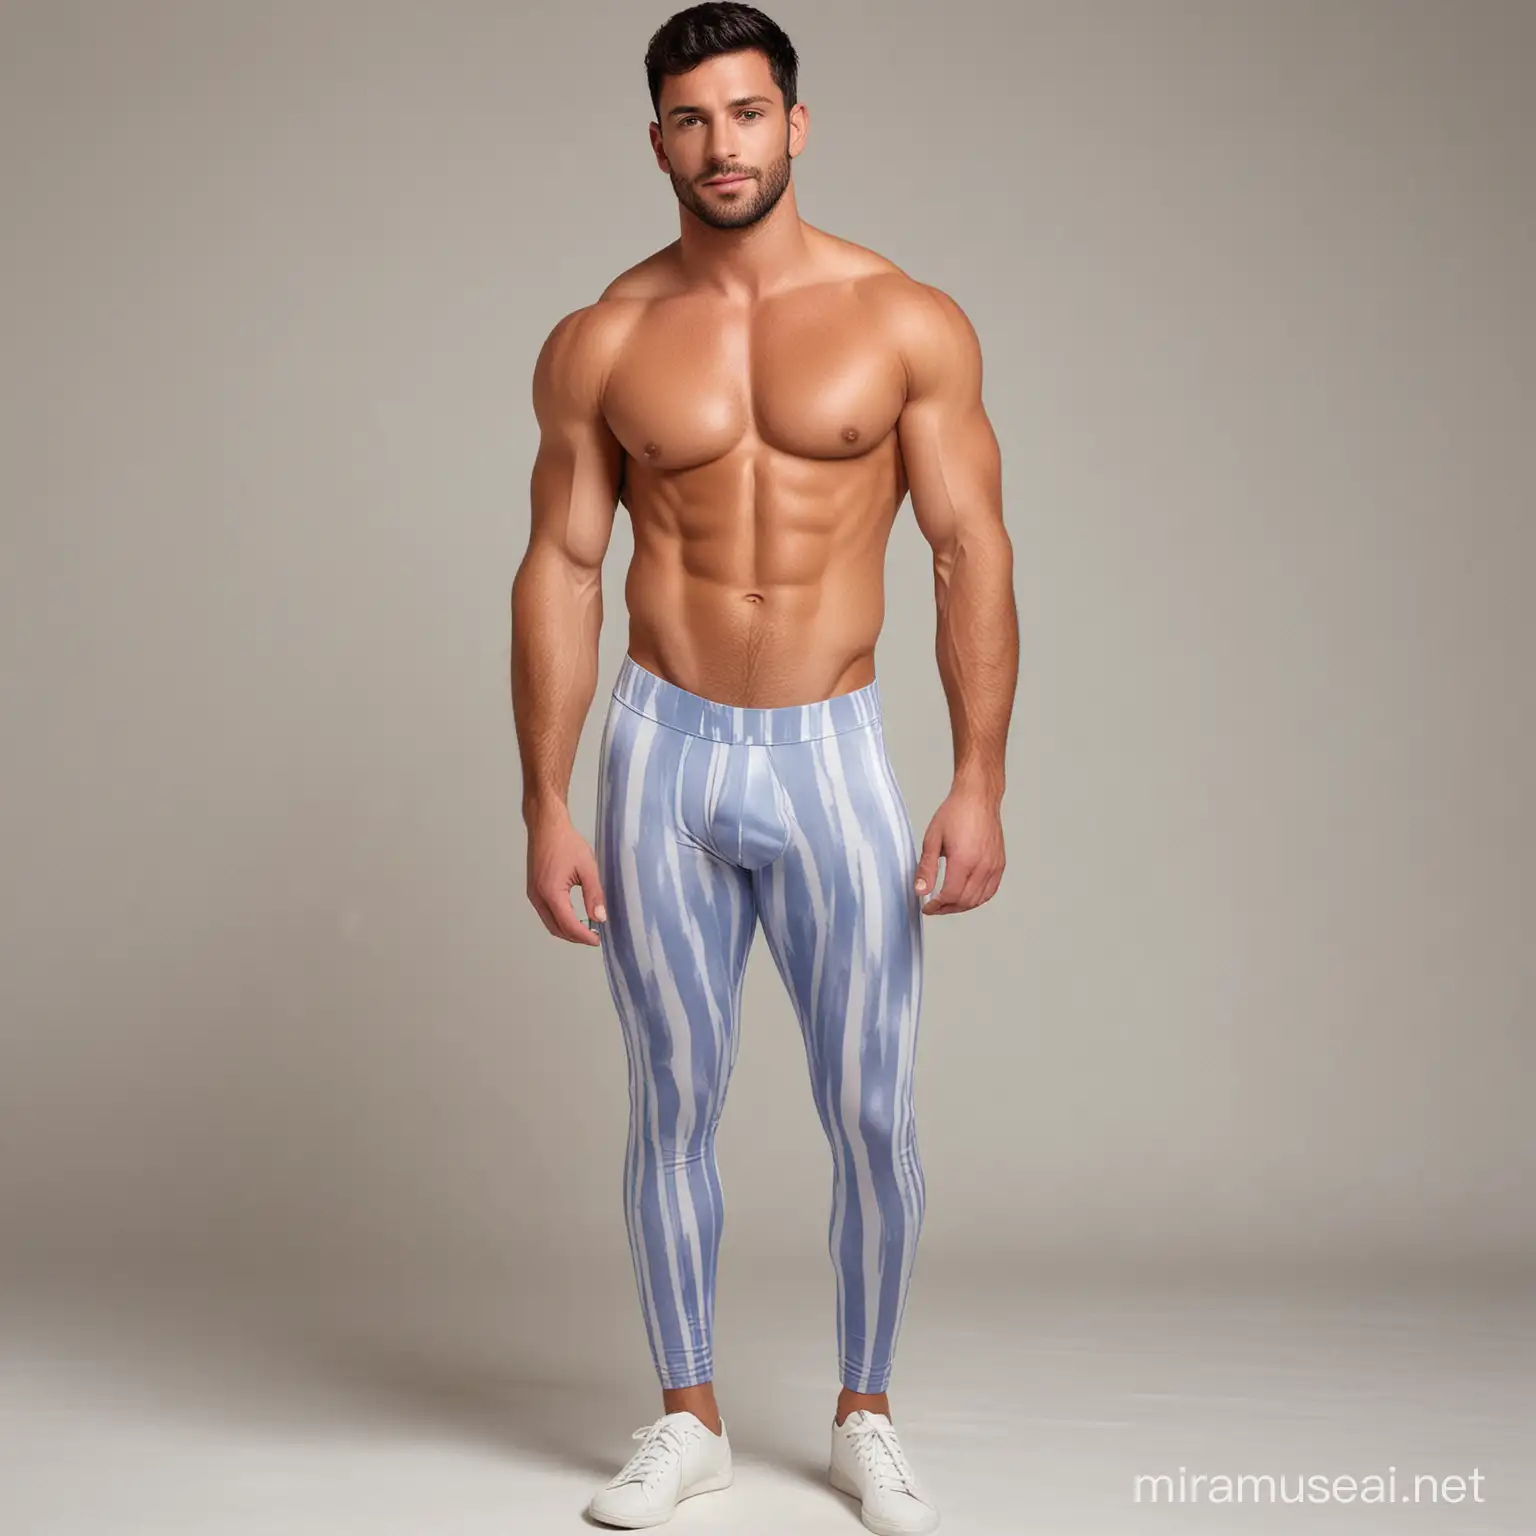 Muscular Argentine Man in Periwinkle Spandex Leggings